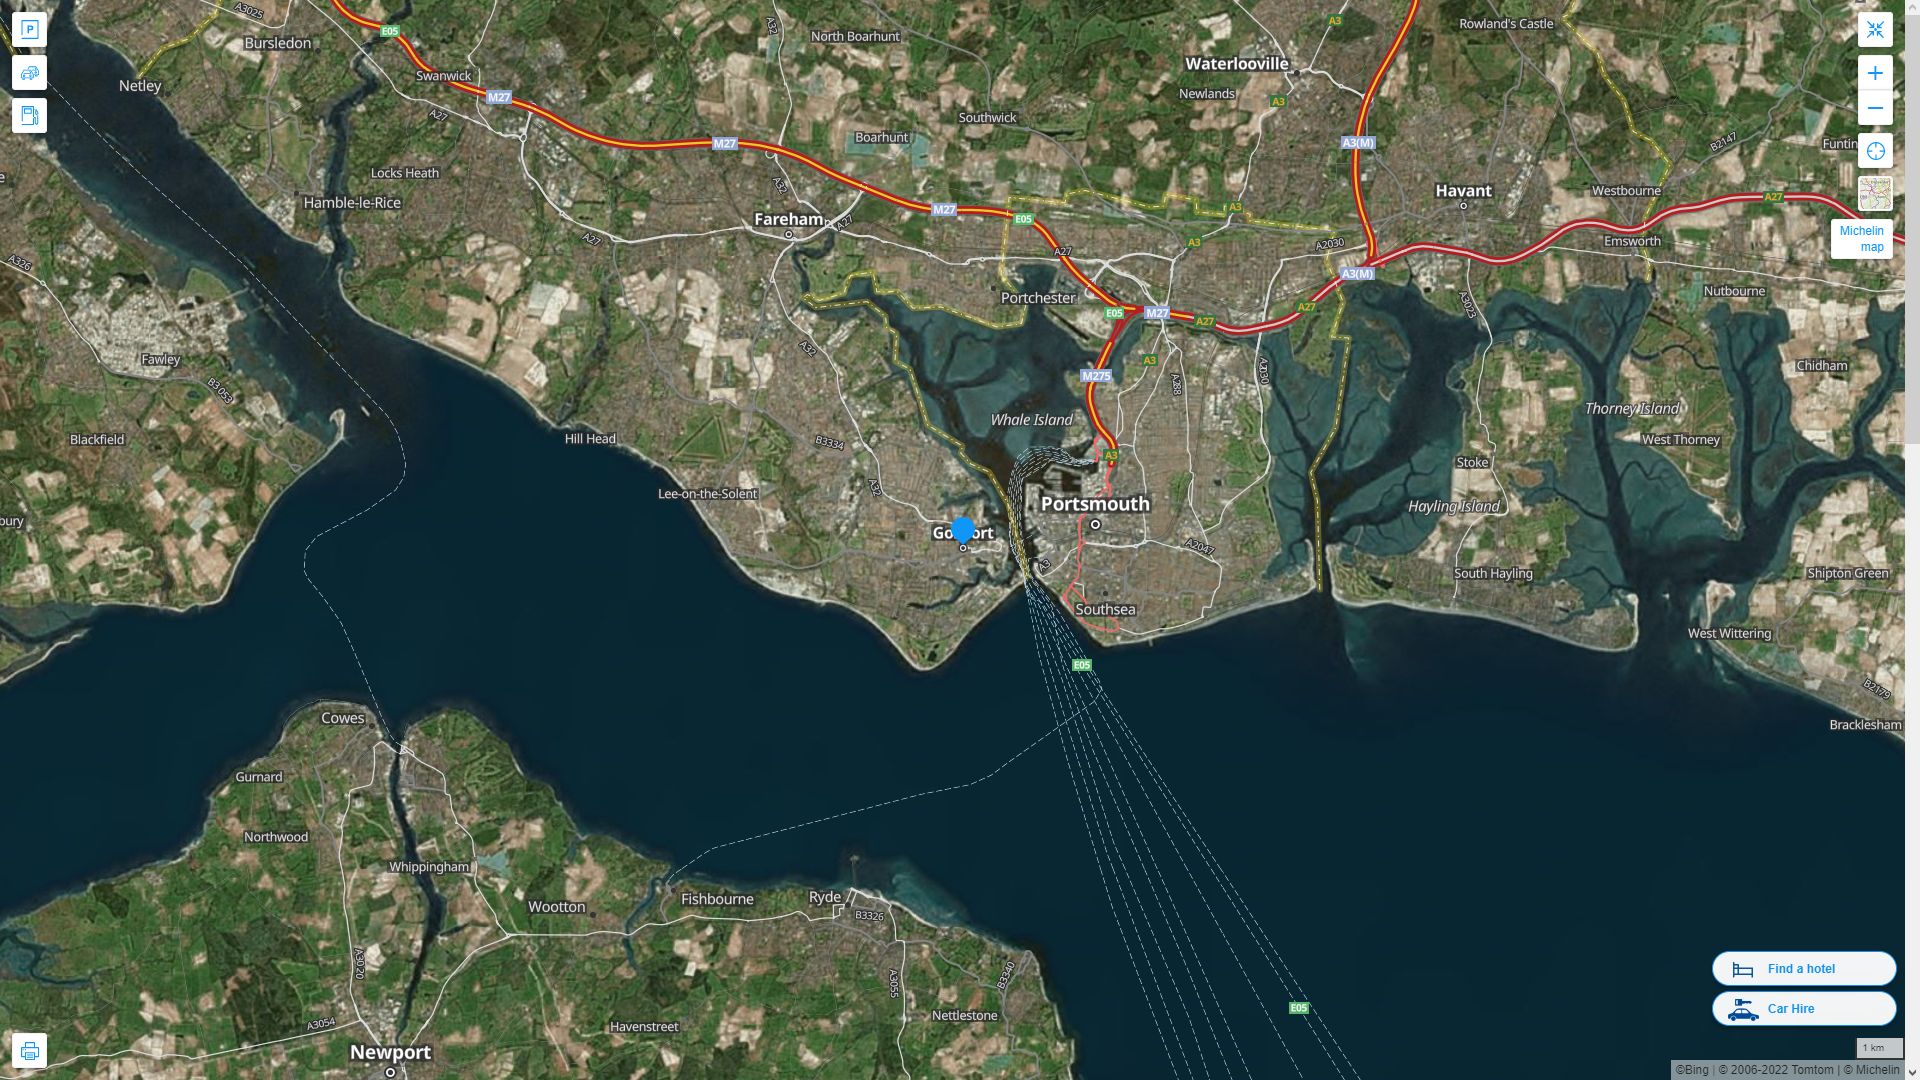 Gosport Royaume Uni Autoroute et carte routiere avec vue satellite